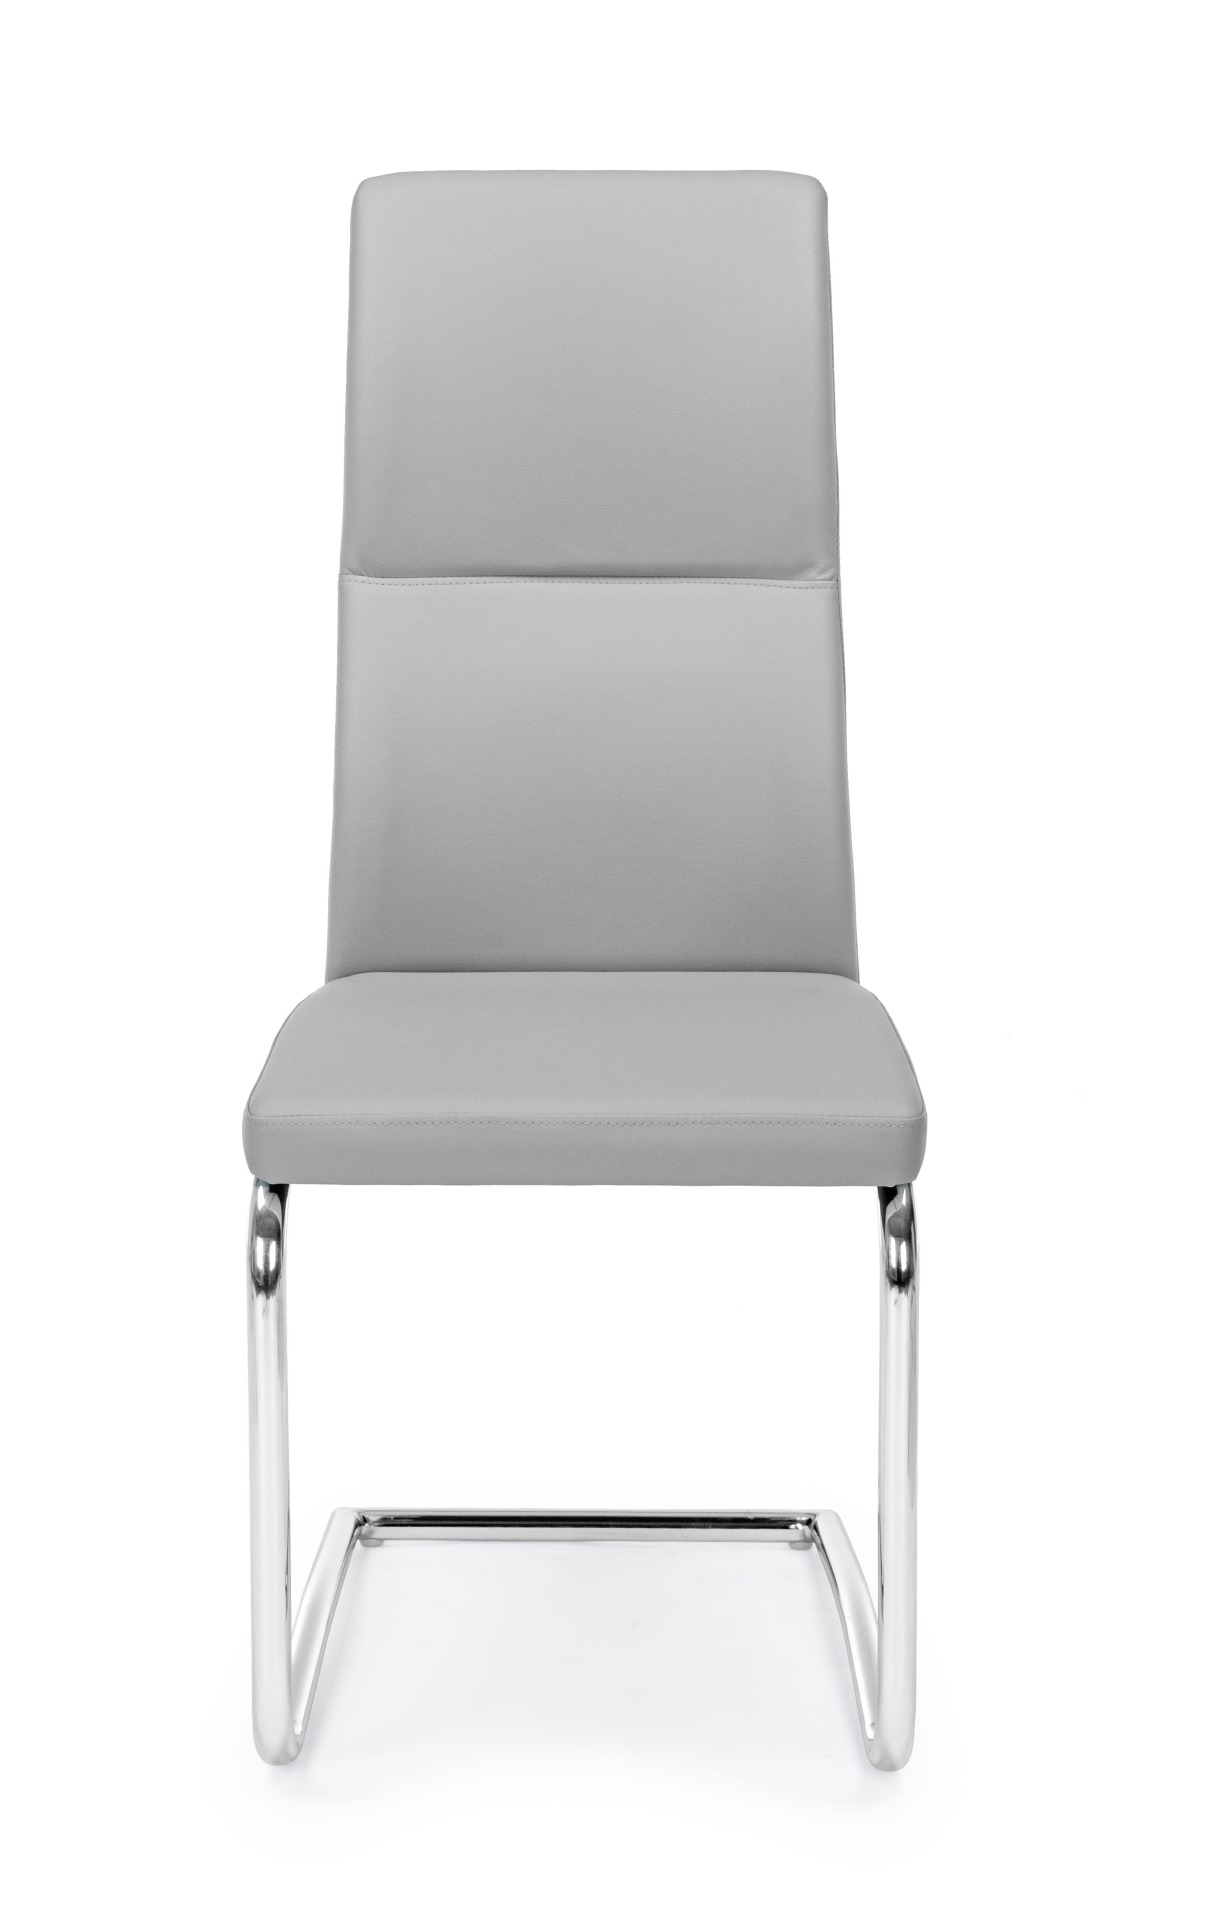 Der Esszimmerstuhl Thelma überzeugt mit seinem modernem Design. Gefertigt wurde der Stuhl aus Kunstleder, welches einen hellgrauen Farbton besitzt. Das Gestell ist aus Metall und ist Silber. Die Sitzhöhe beträgt 47 cm.